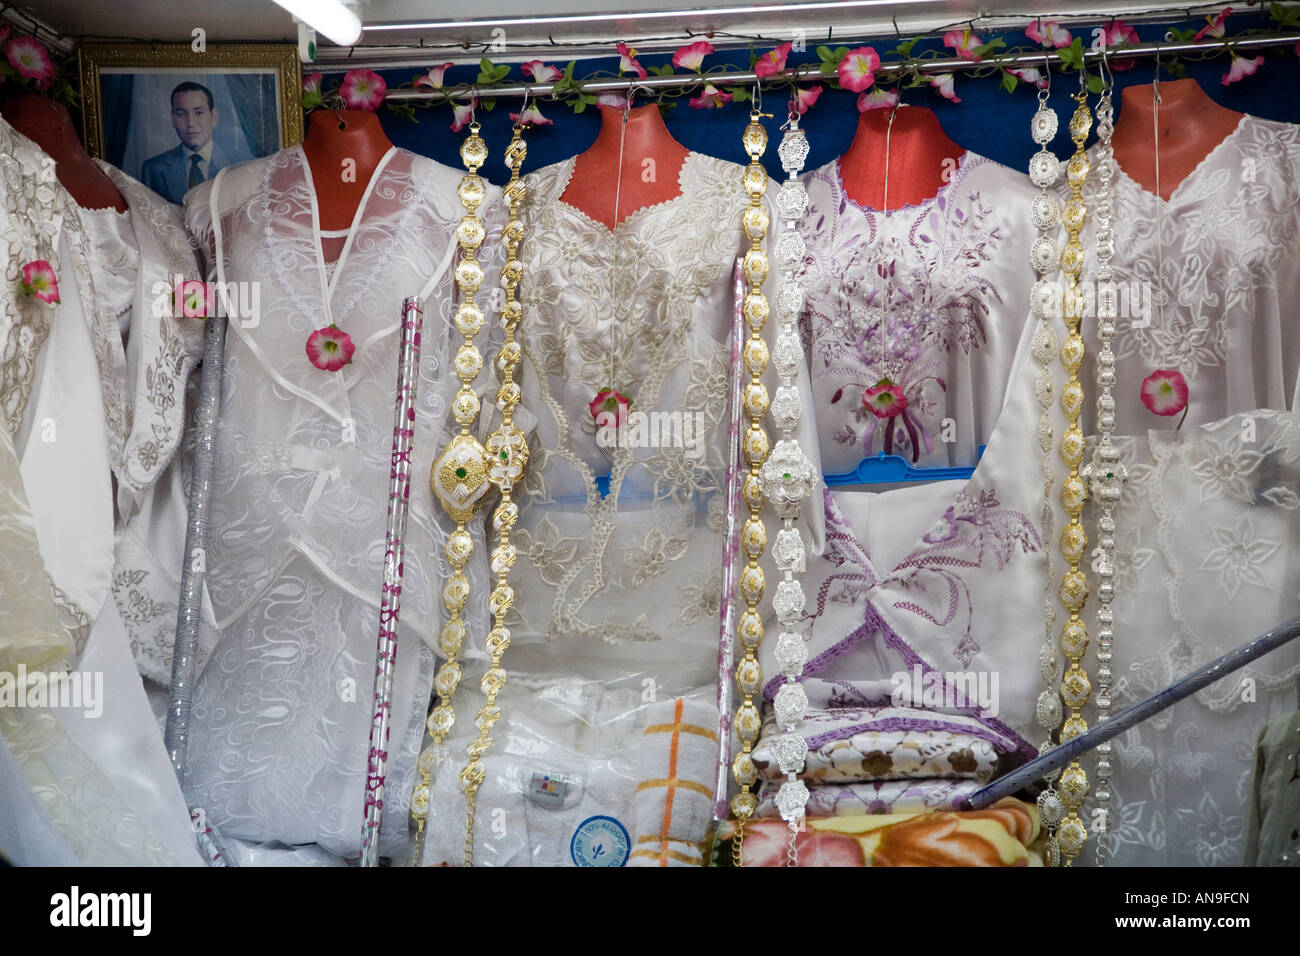 Robes de mariage pour les femmes, le souk de Tétouan, Maroc Banque D'Images